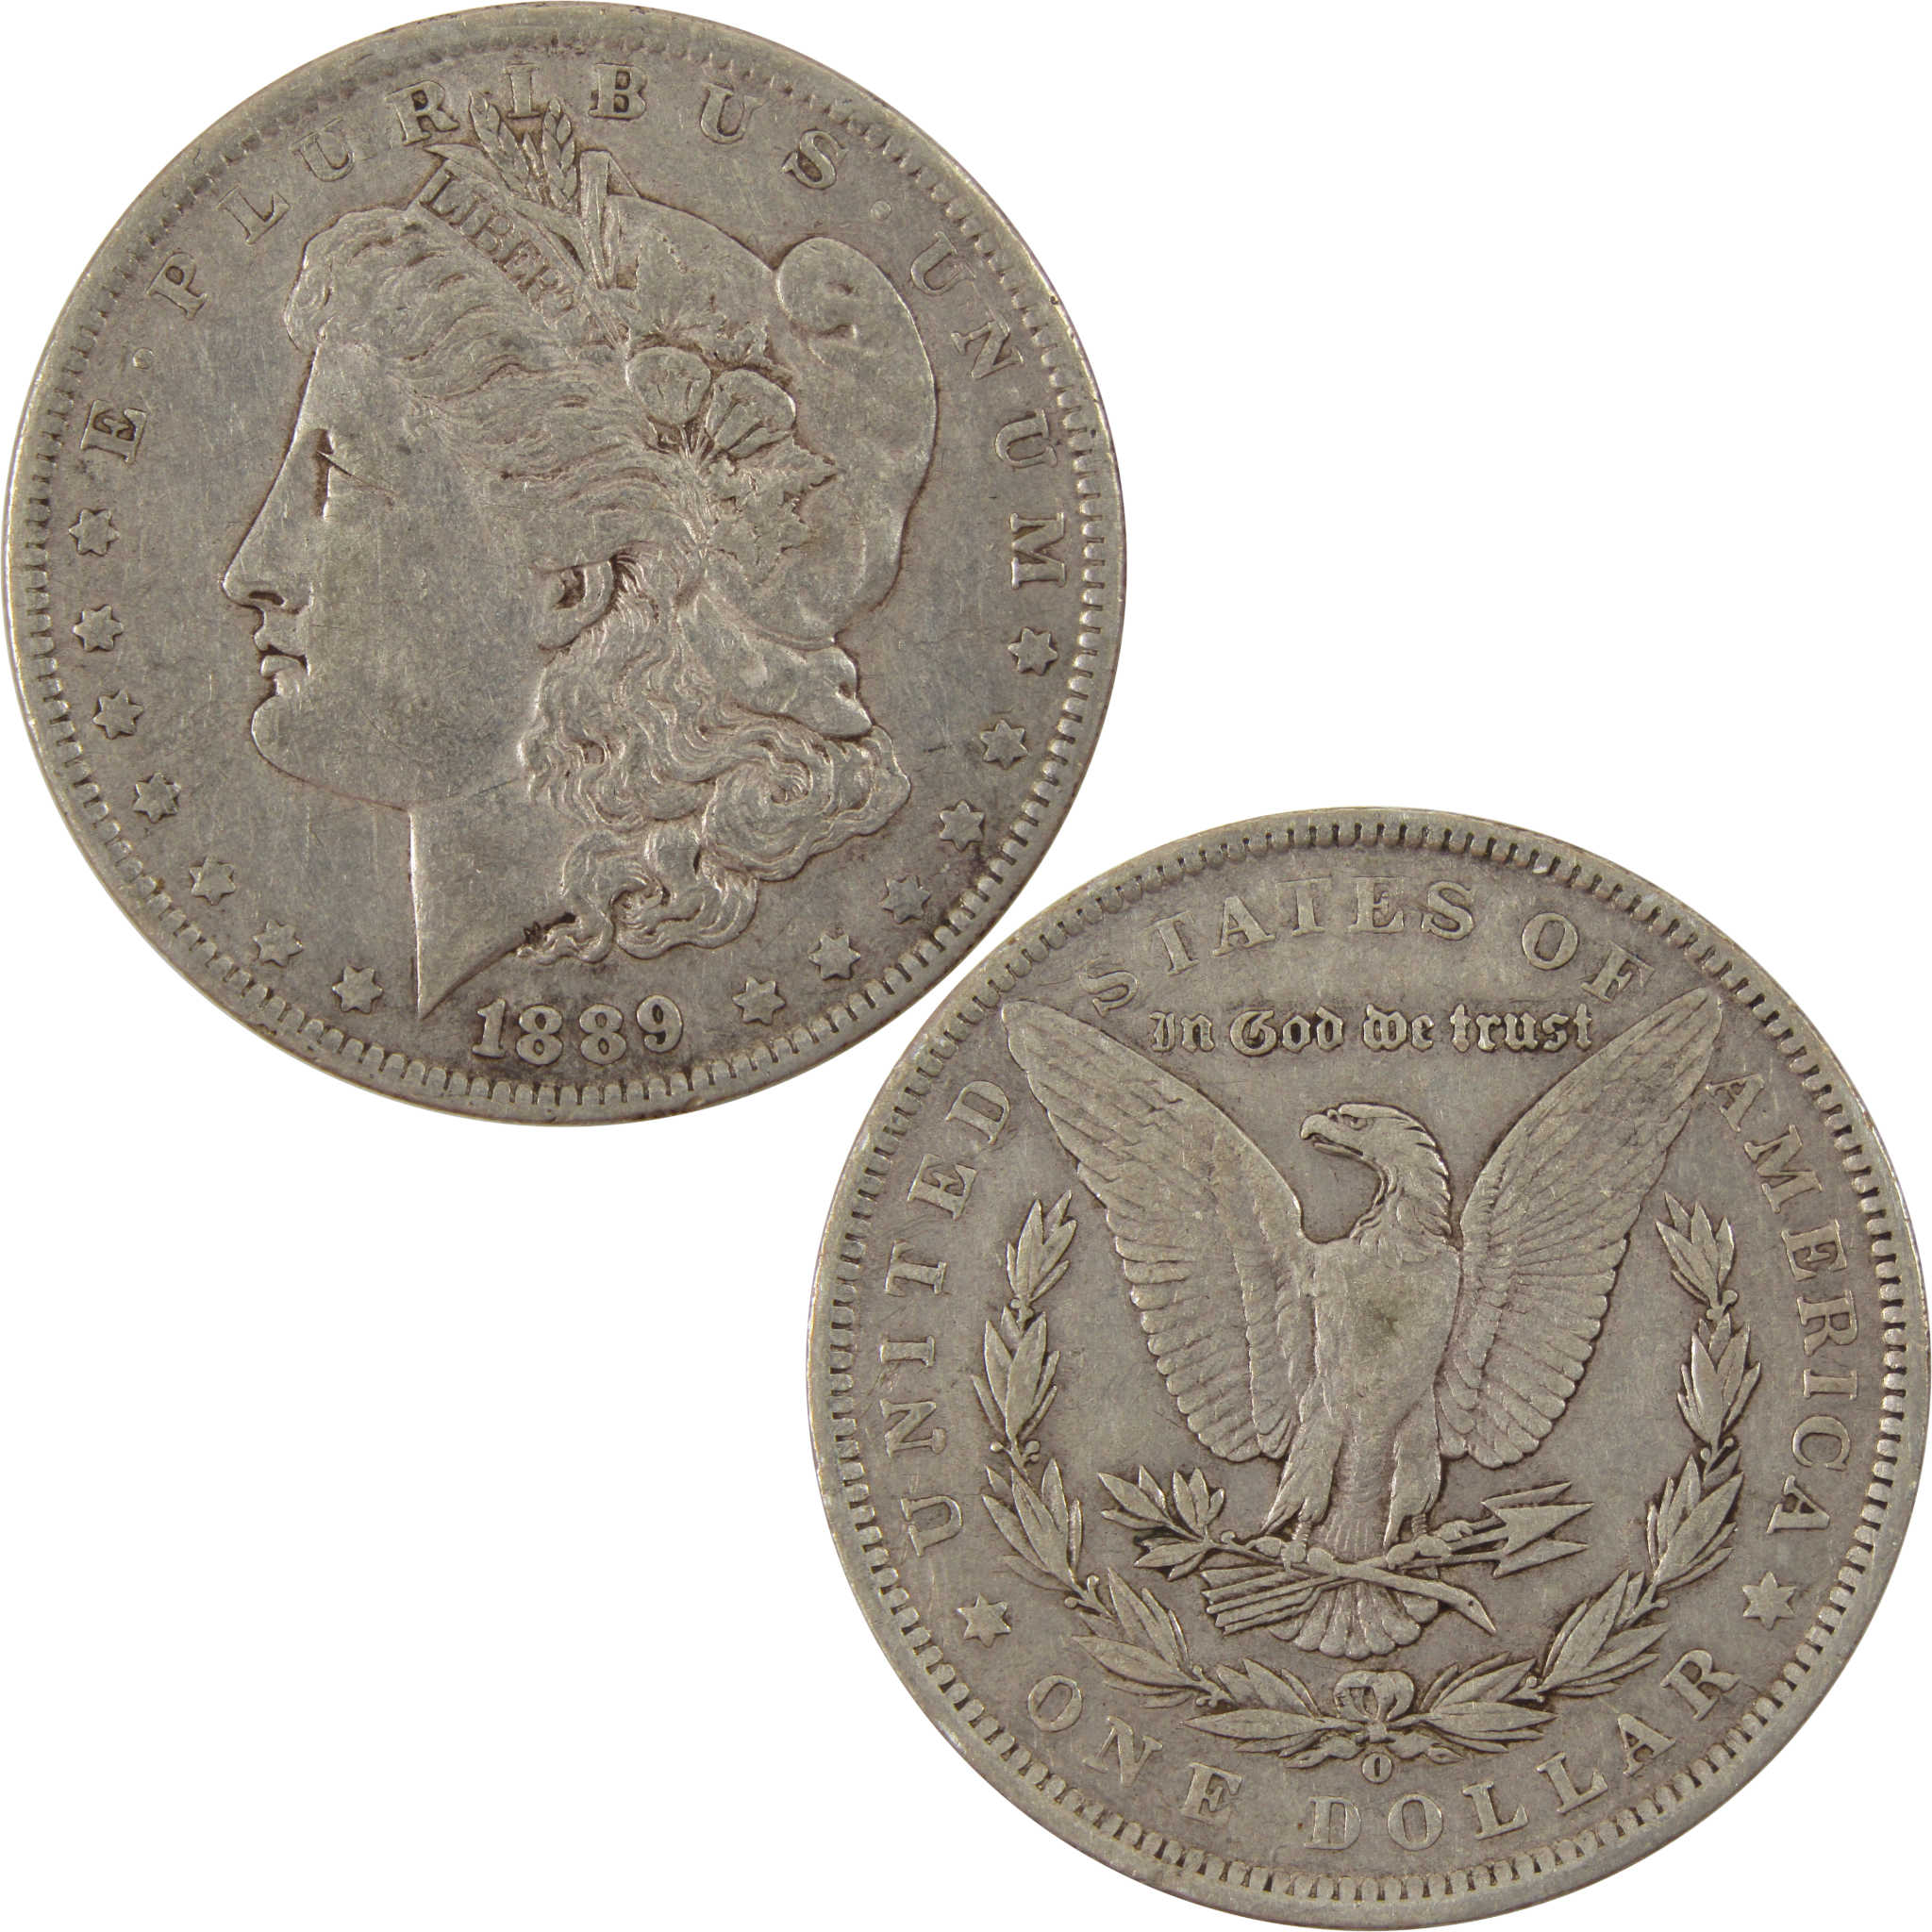 1889 O Morgan Dollar VF Very Fine 90% Silver $1 Coin SKU:I8009 - Morgan coin - Morgan silver dollar - Morgan silver dollar for sale - Profile Coins &amp; Collectibles